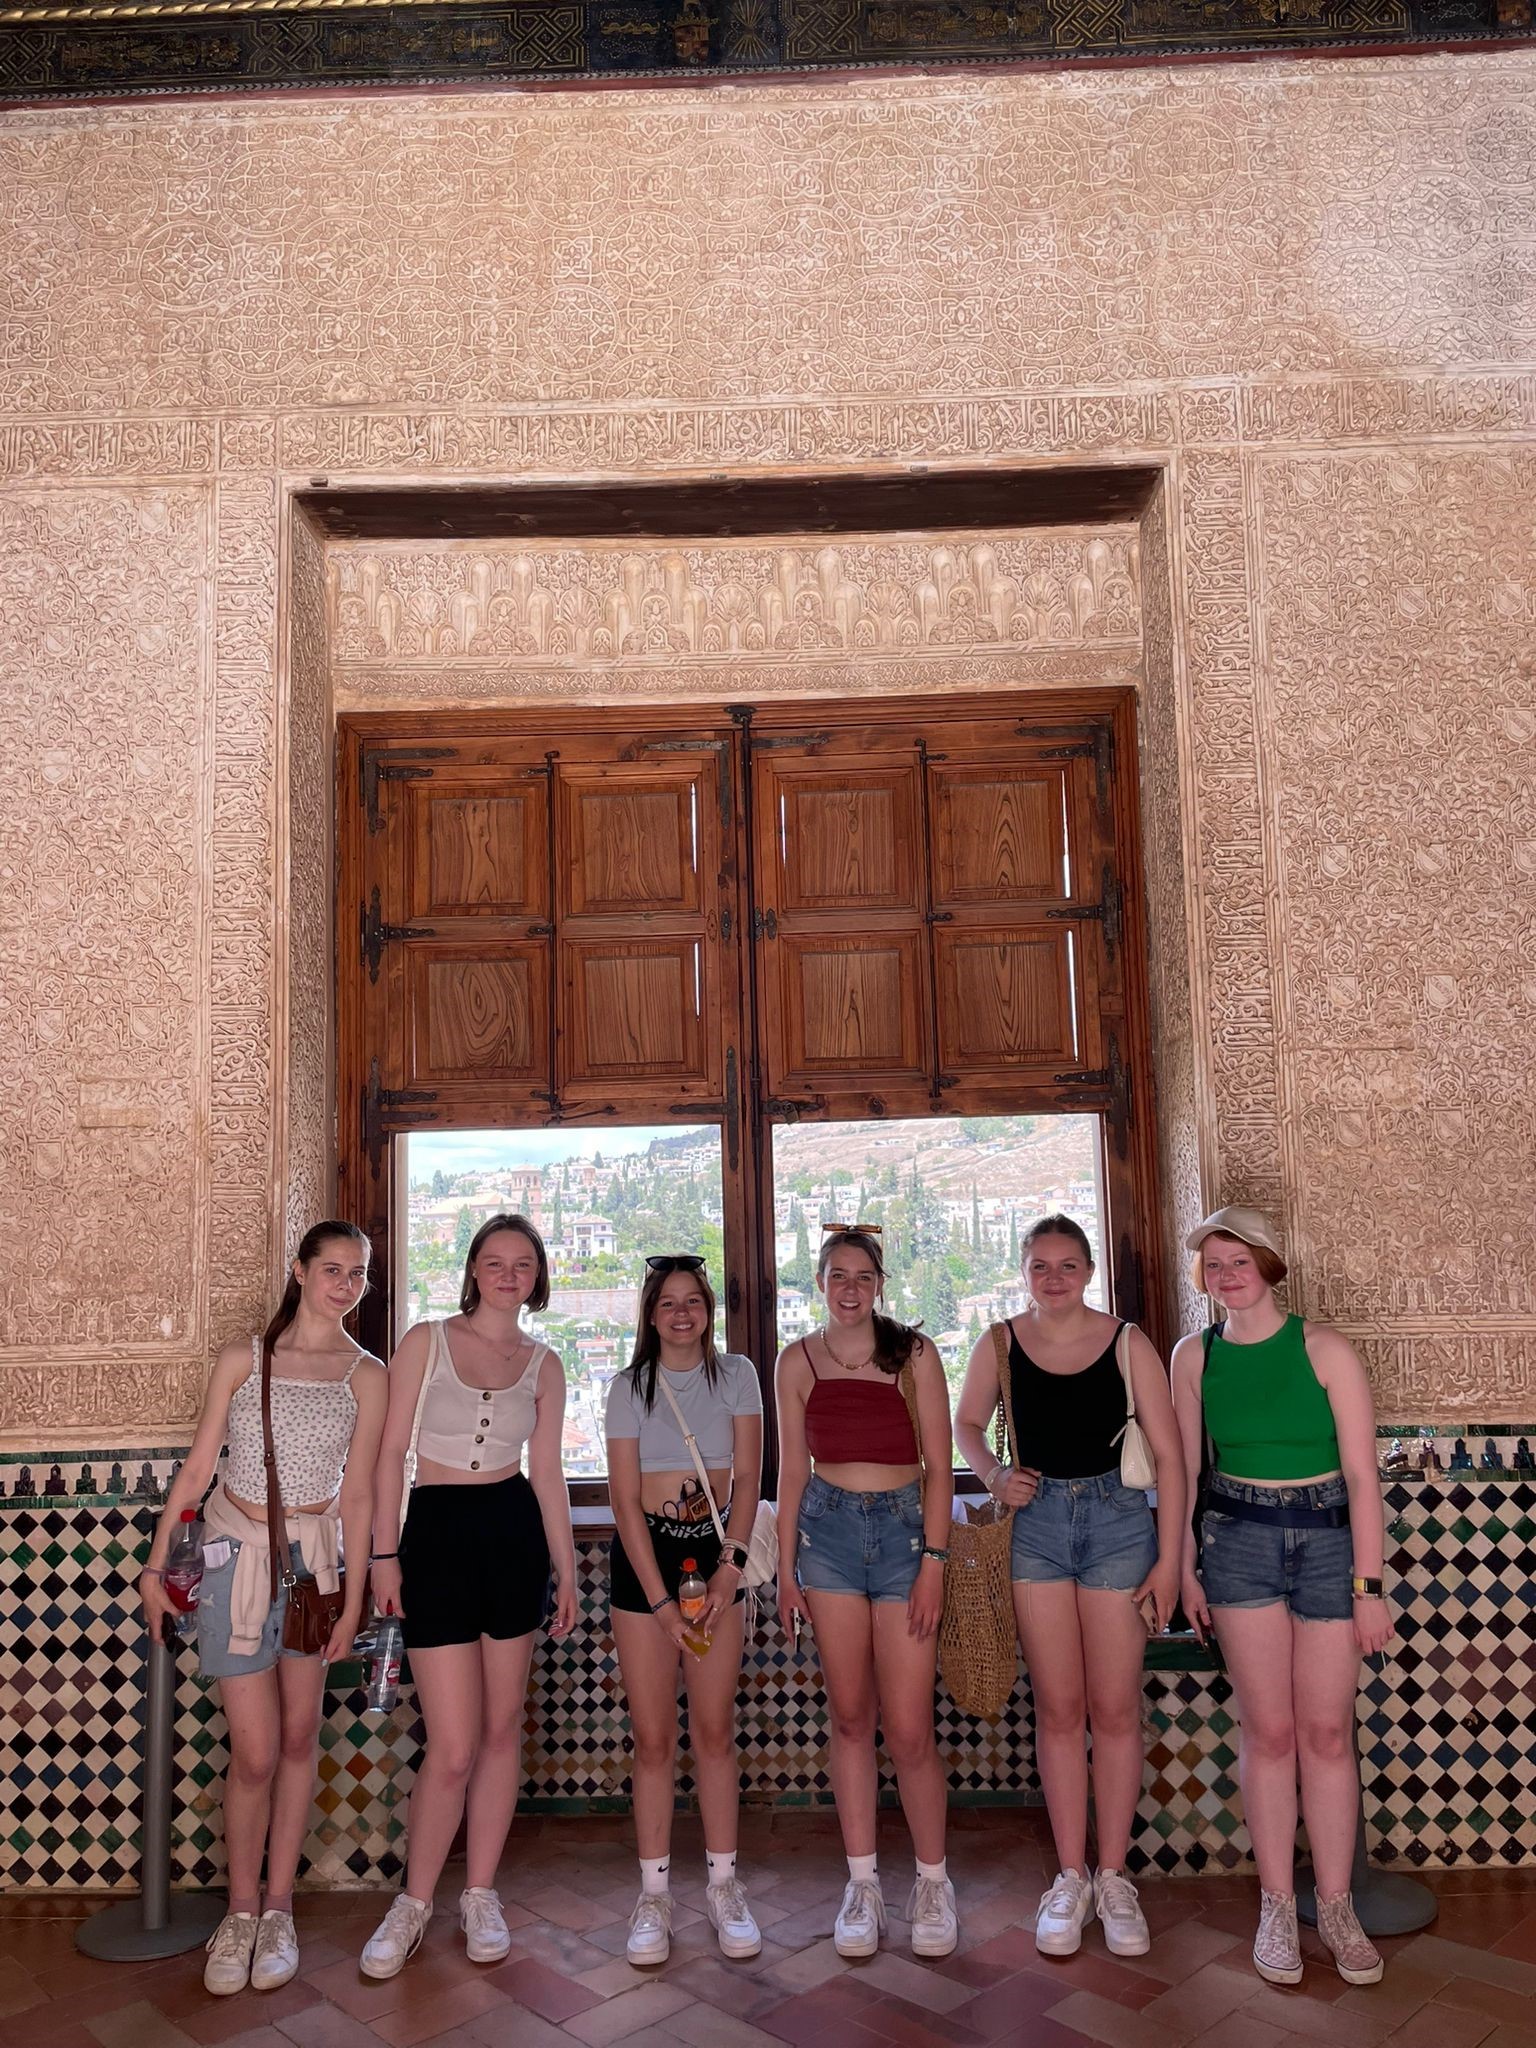 Antiguos alumnos de secundaria con el Palacio de la Alhambra al fondo.